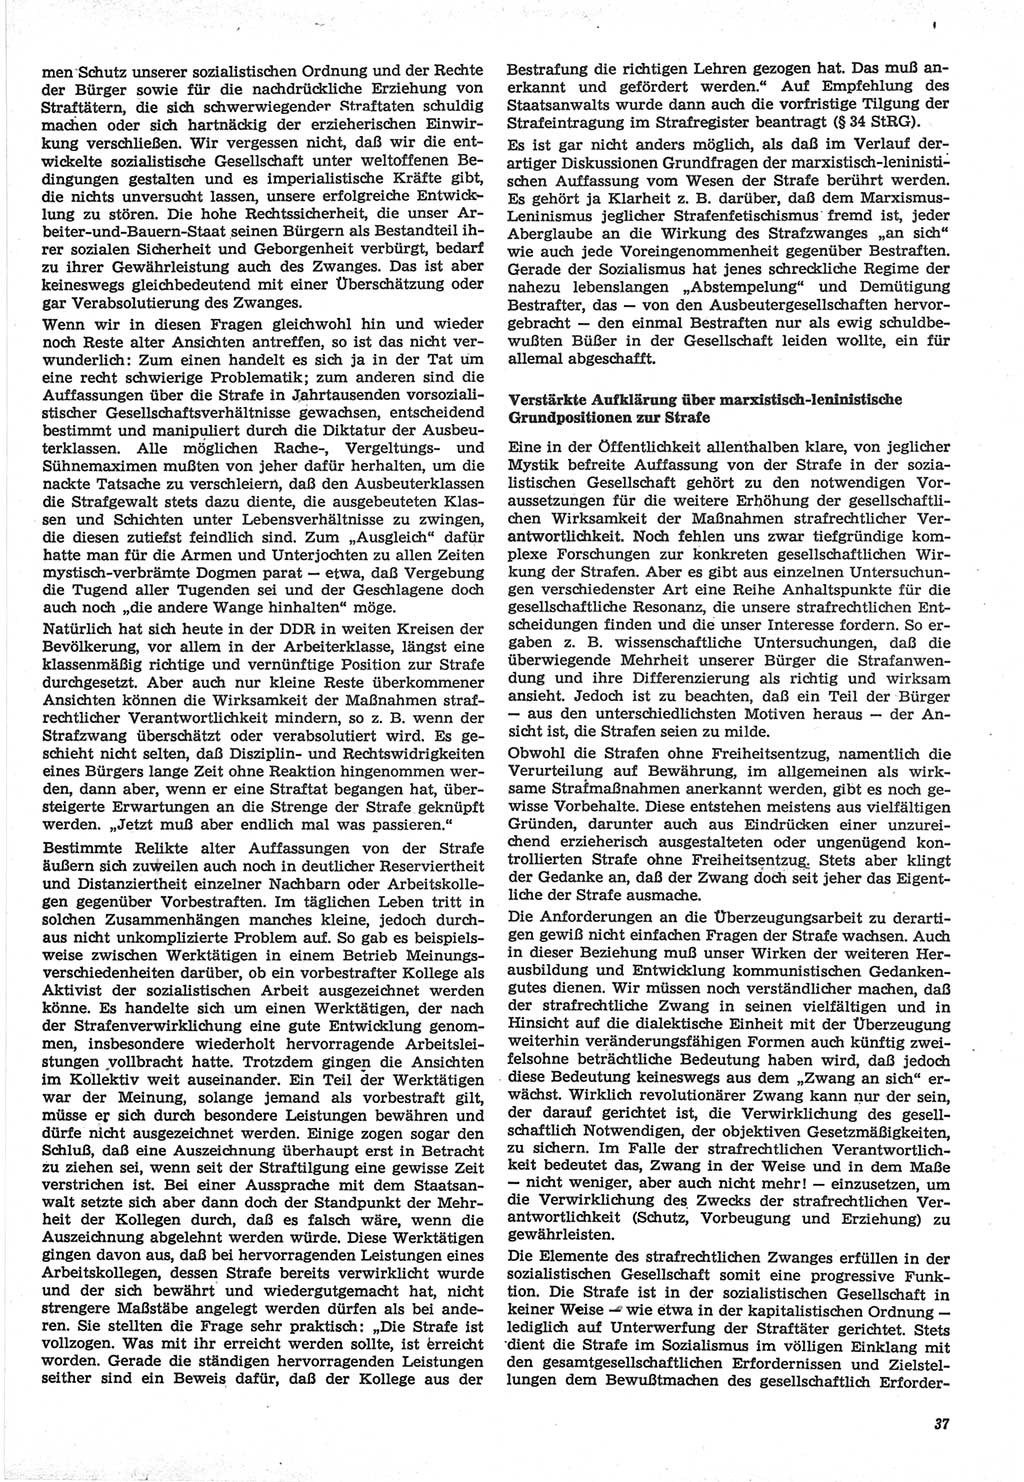 Neue Justiz (NJ), Zeitschrift für Recht und Rechtswissenschaft-Zeitschrift, sozialistisches Recht und Gesetzlichkeit, 31. Jahrgang 1977, Seite 37 (NJ DDR 1977, S. 37)